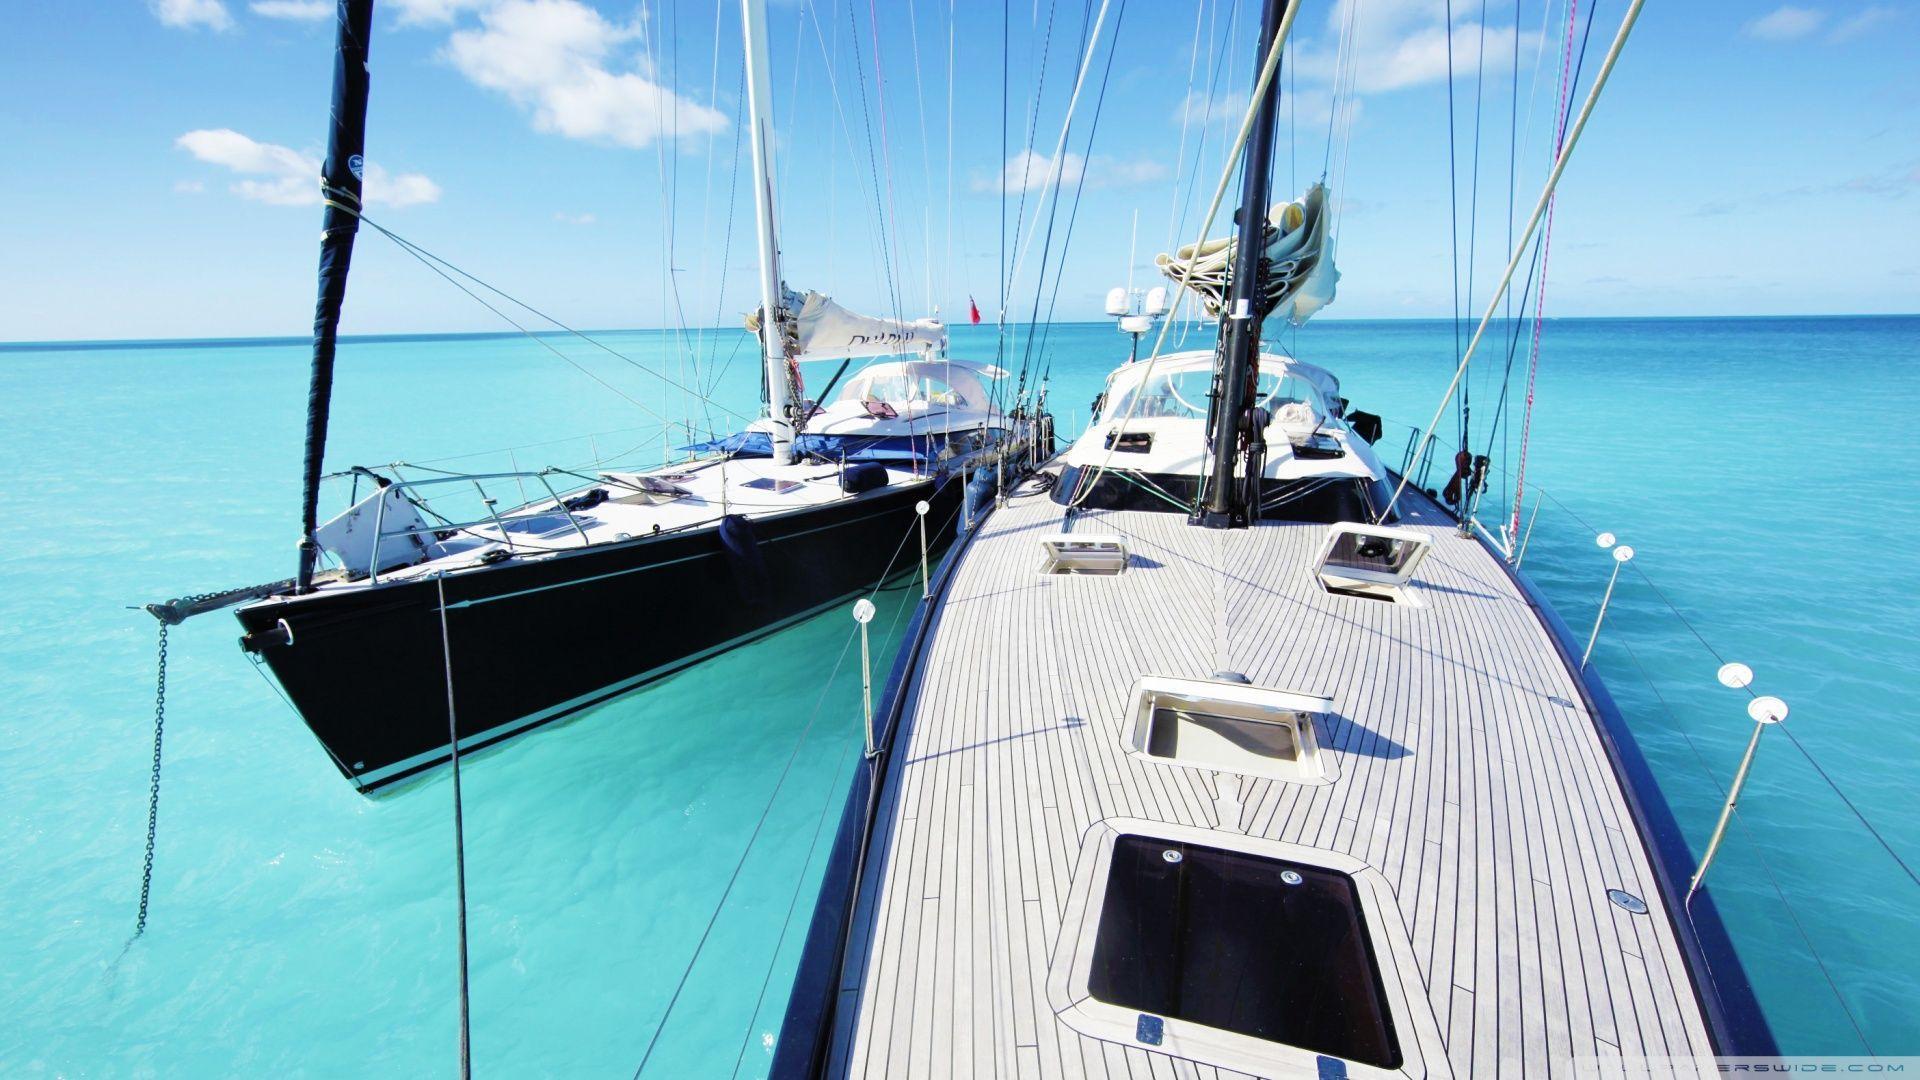 Sailing Yachts HD desktop wallpaper, Widescreen, High Definition